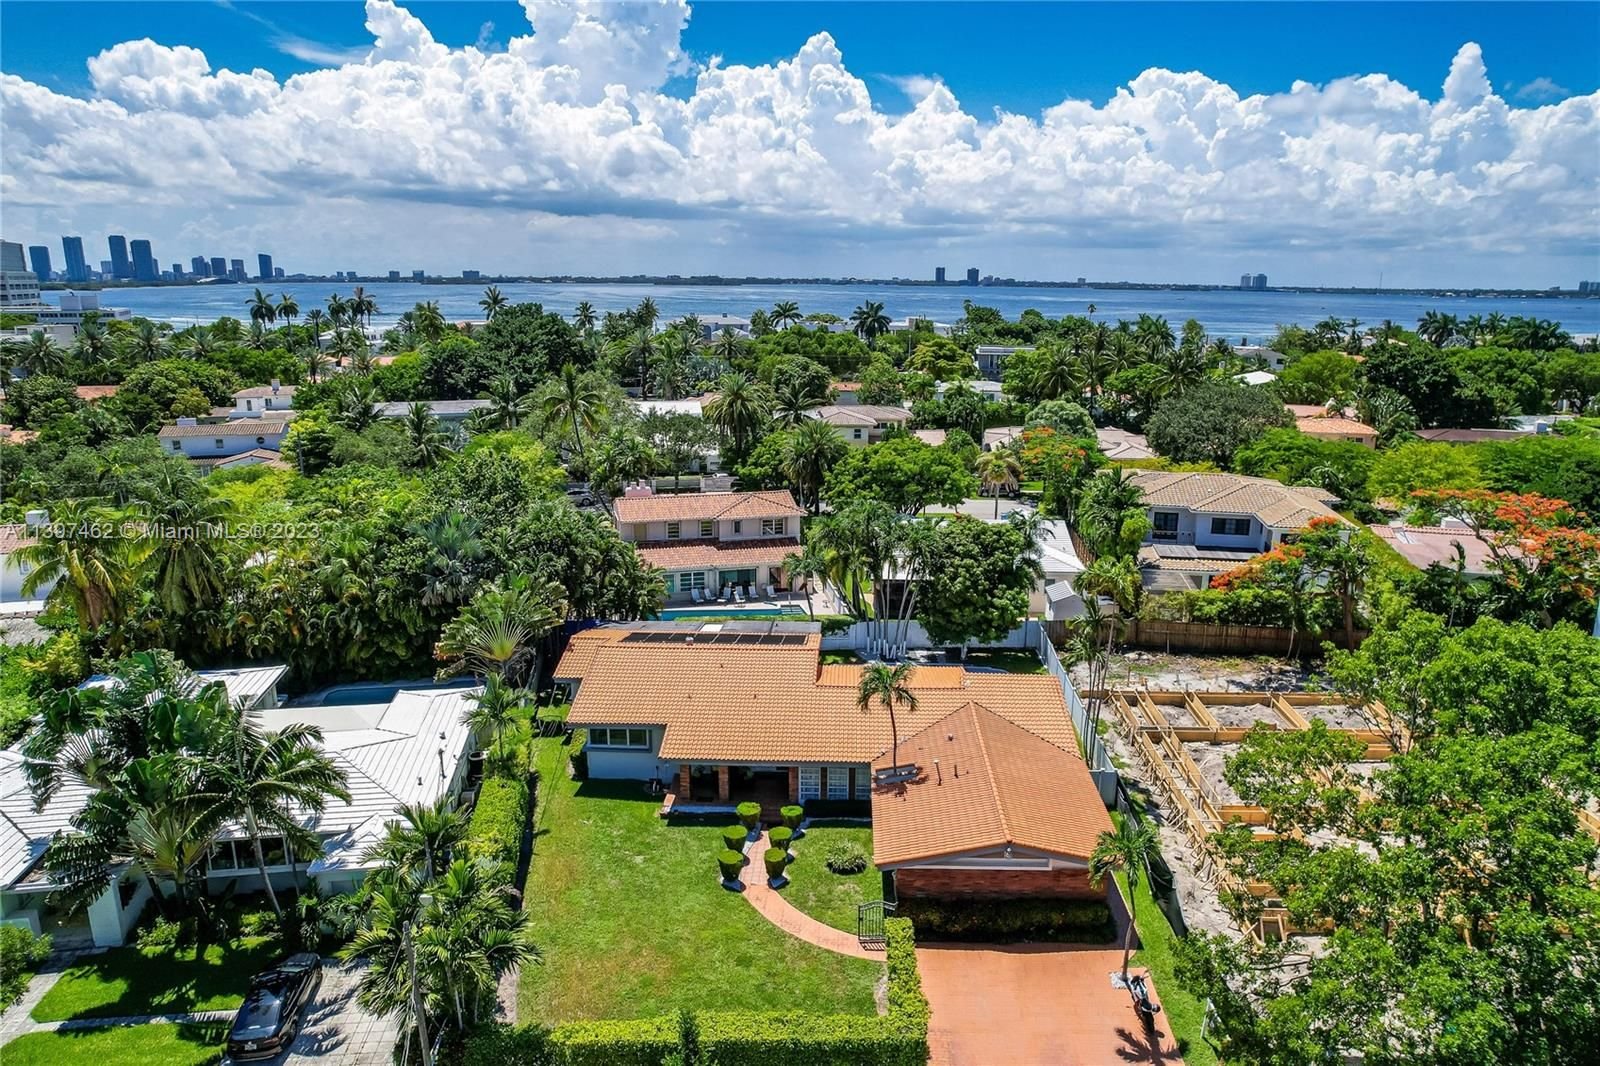 Real estate property located at 4340 Michigan Ave, Miami-Dade County, Miami Beach, FL